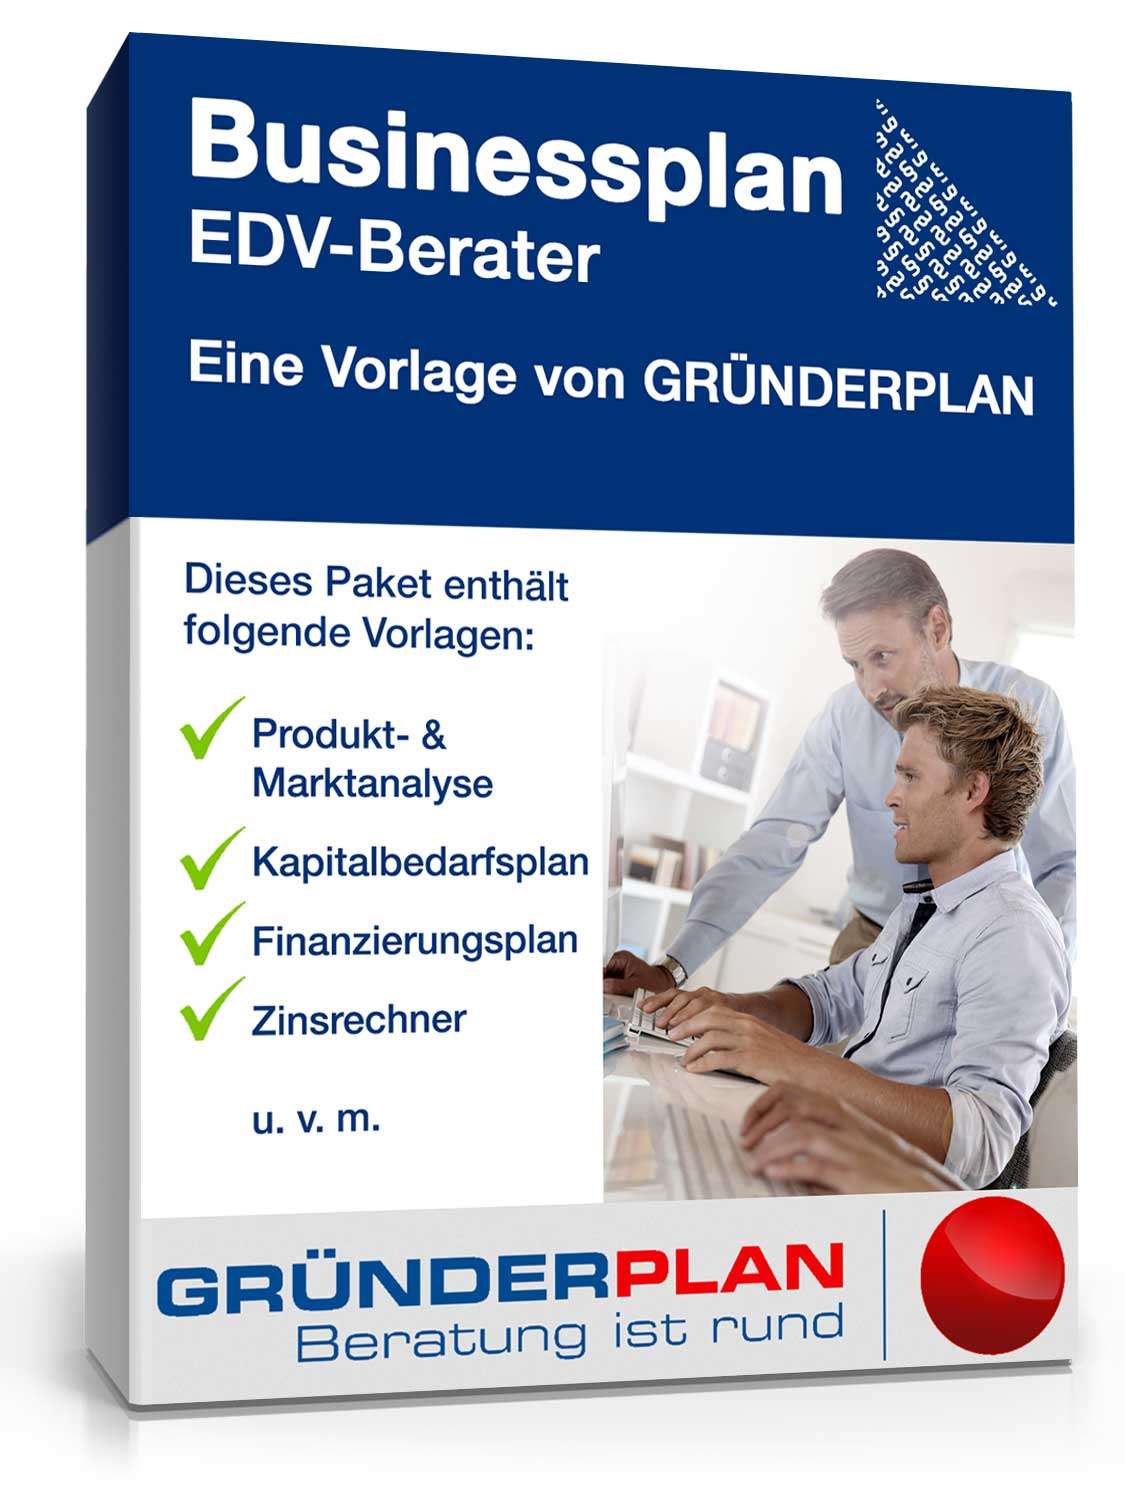 Hauptbild des Produkts: Businessplan EDV-Berater von Gründerplan